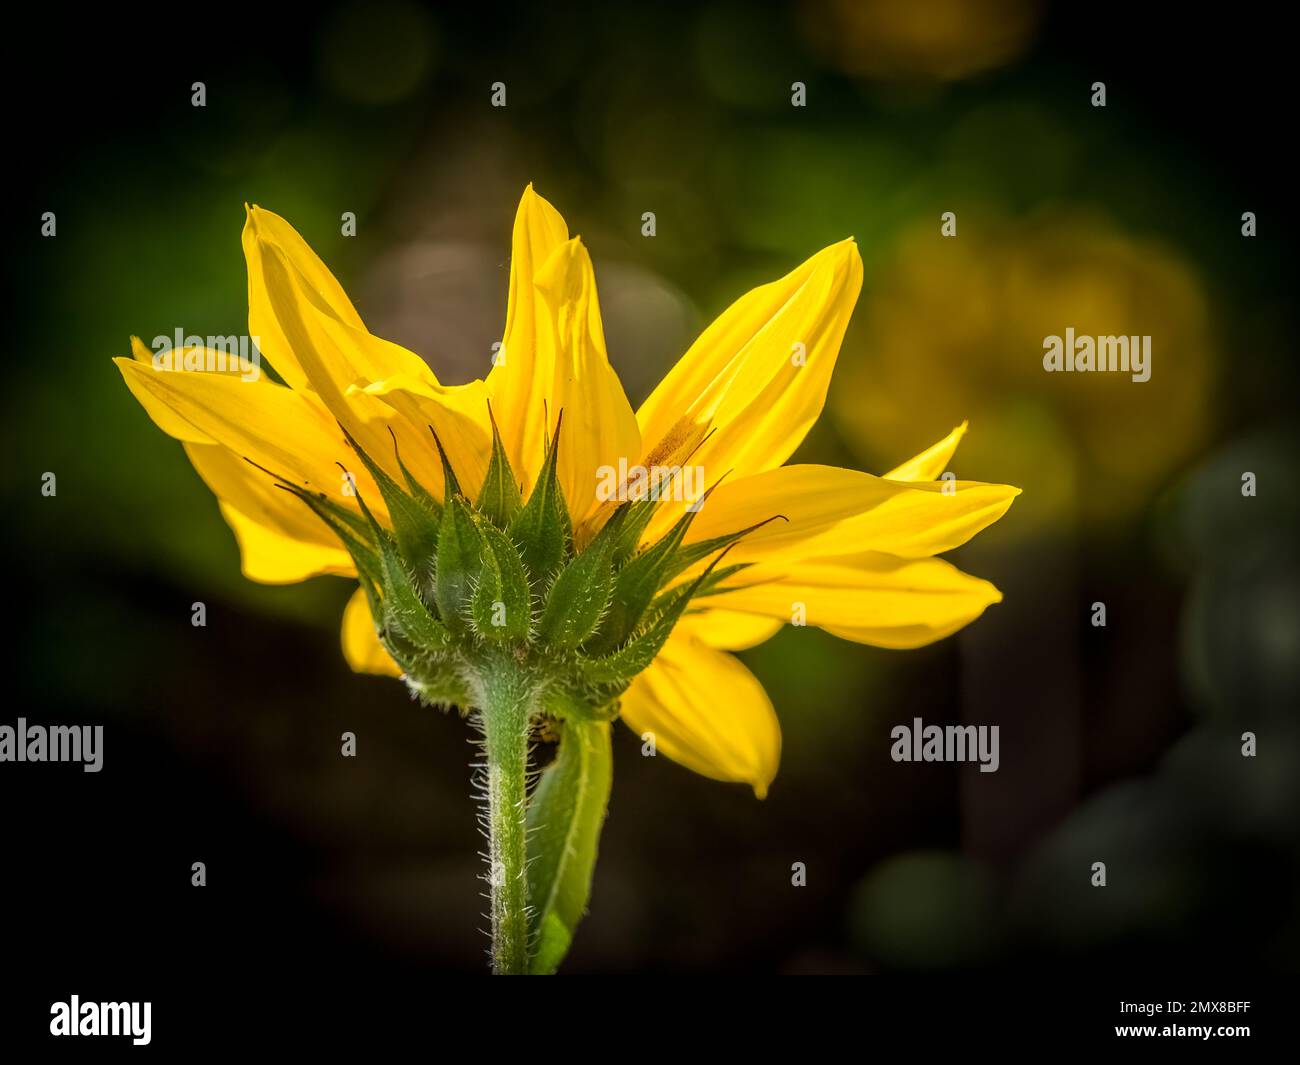 Fleur jaune rétro-éclairée et vue de dessous Banque D'Images